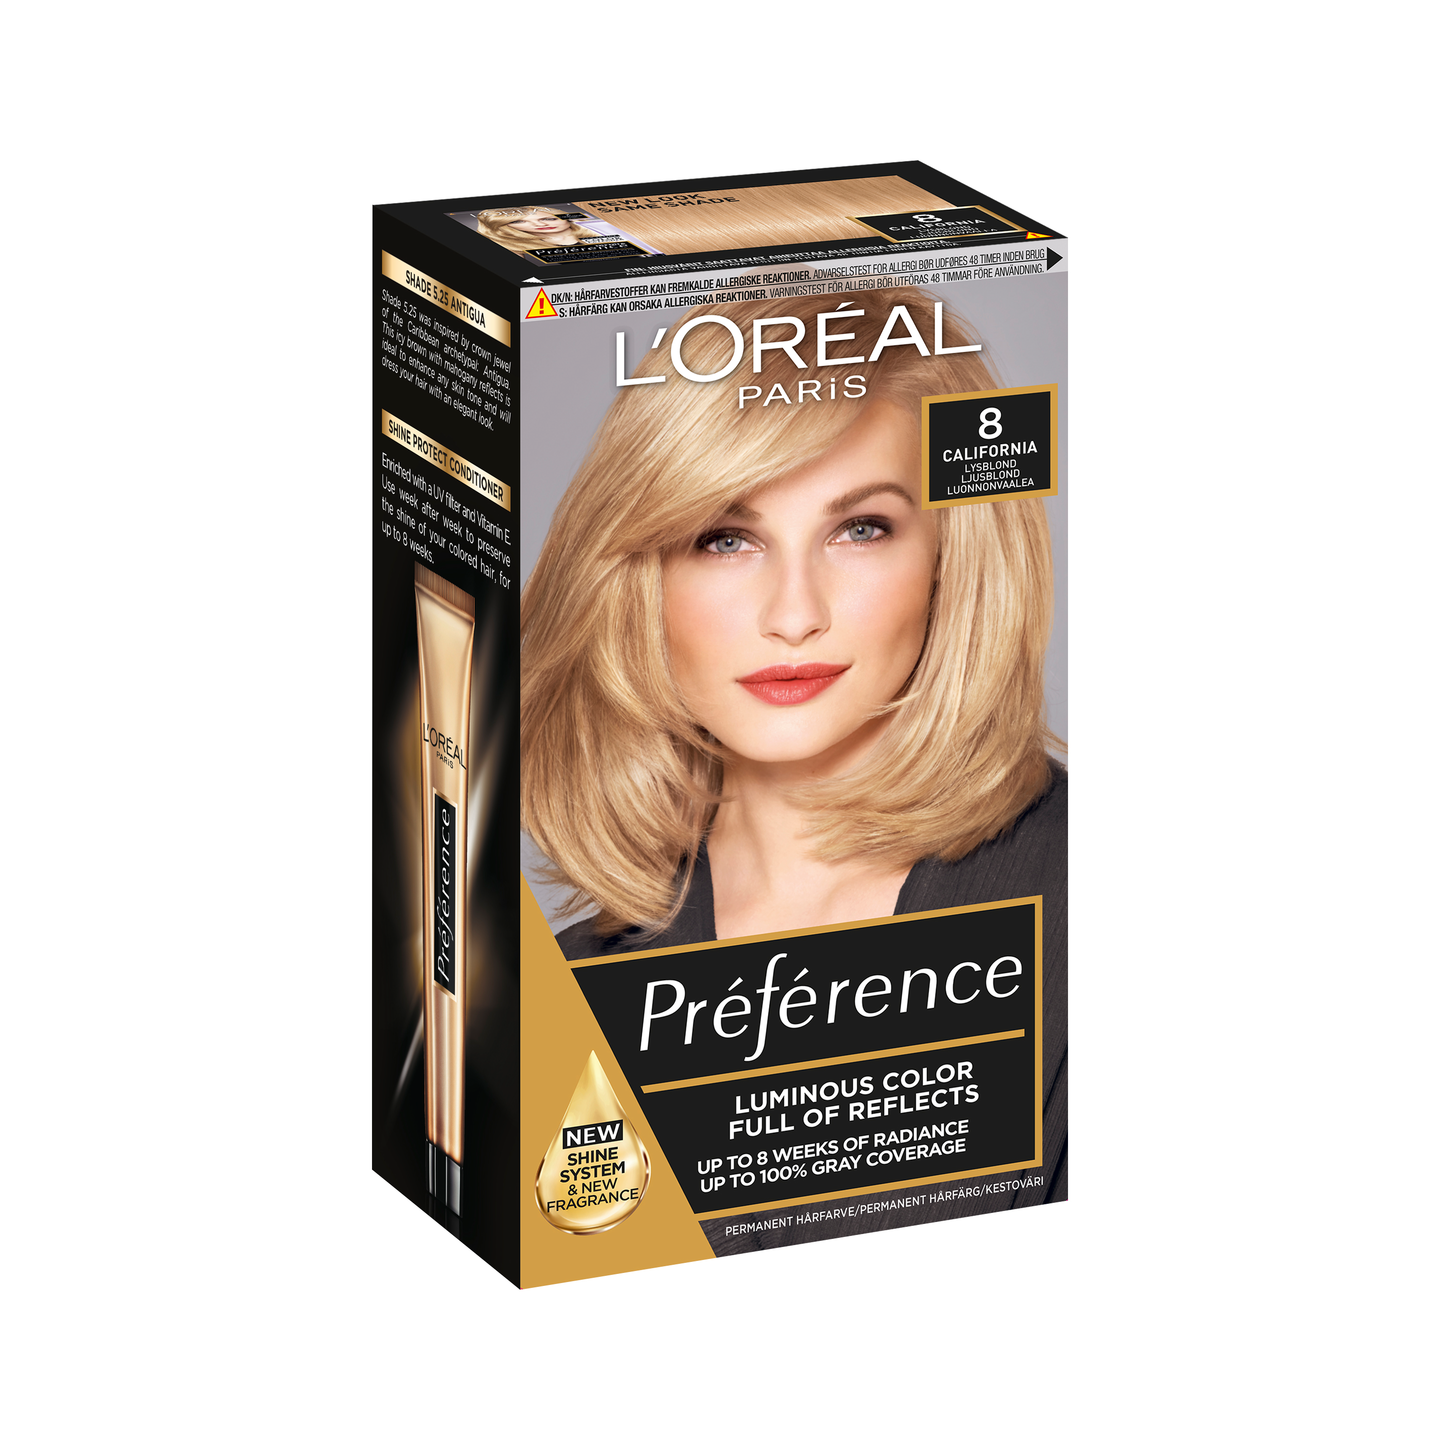 L'Oréal Paris Préférence kestoväri 8 California Light Blonde Luonnonvaalea